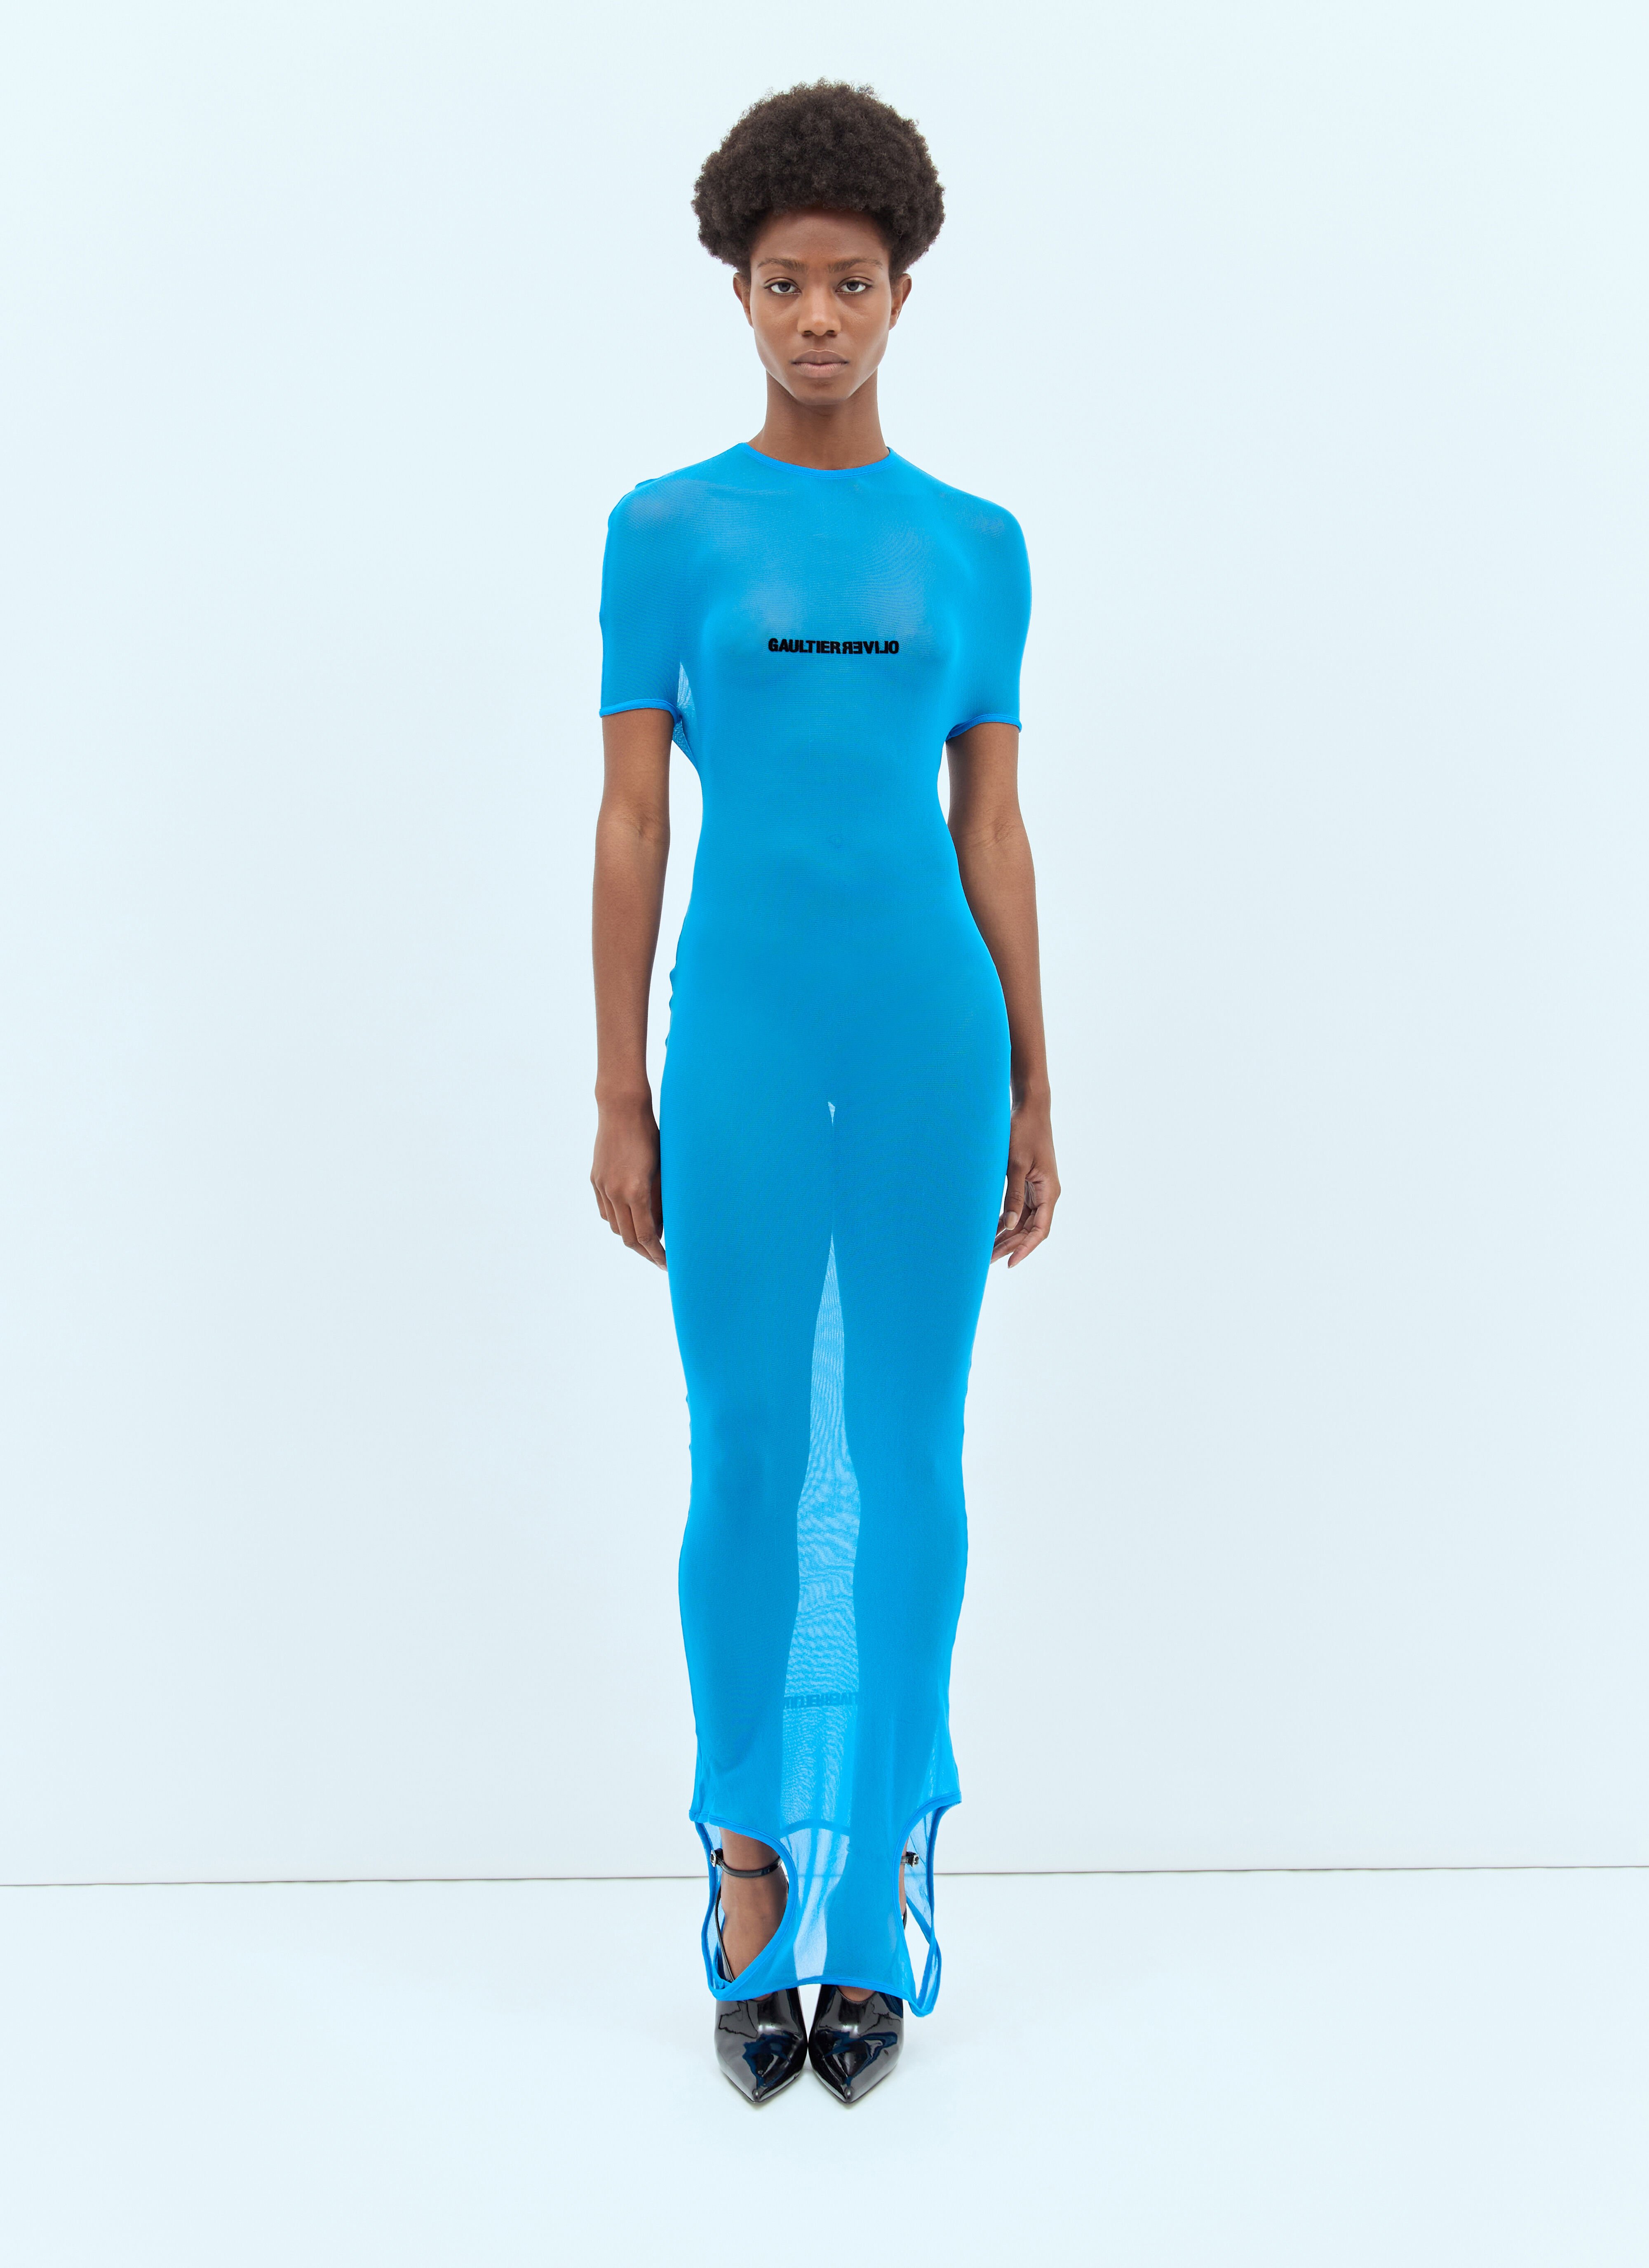 Jean Paul Gaultier Double Neckline Maxi Dress Blue jpg0258010